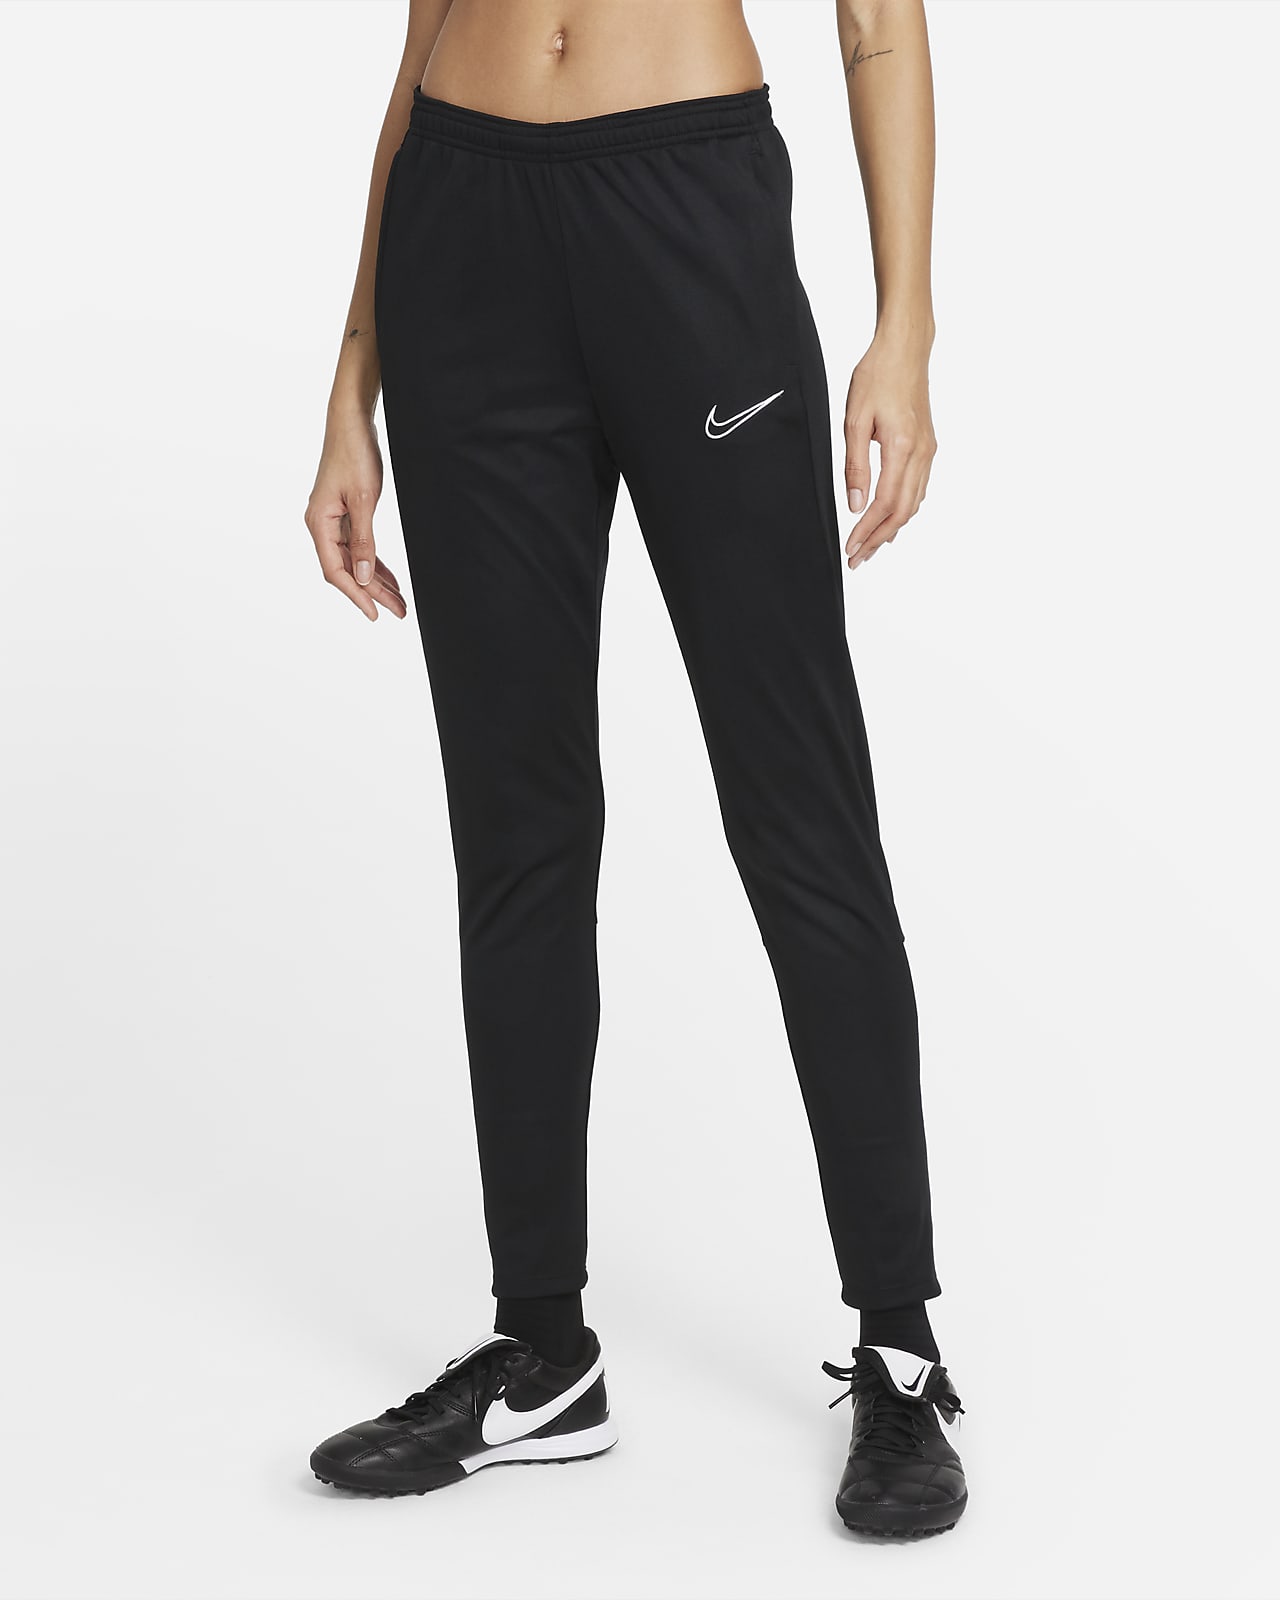 Chándal negro de mujer básico de Nike